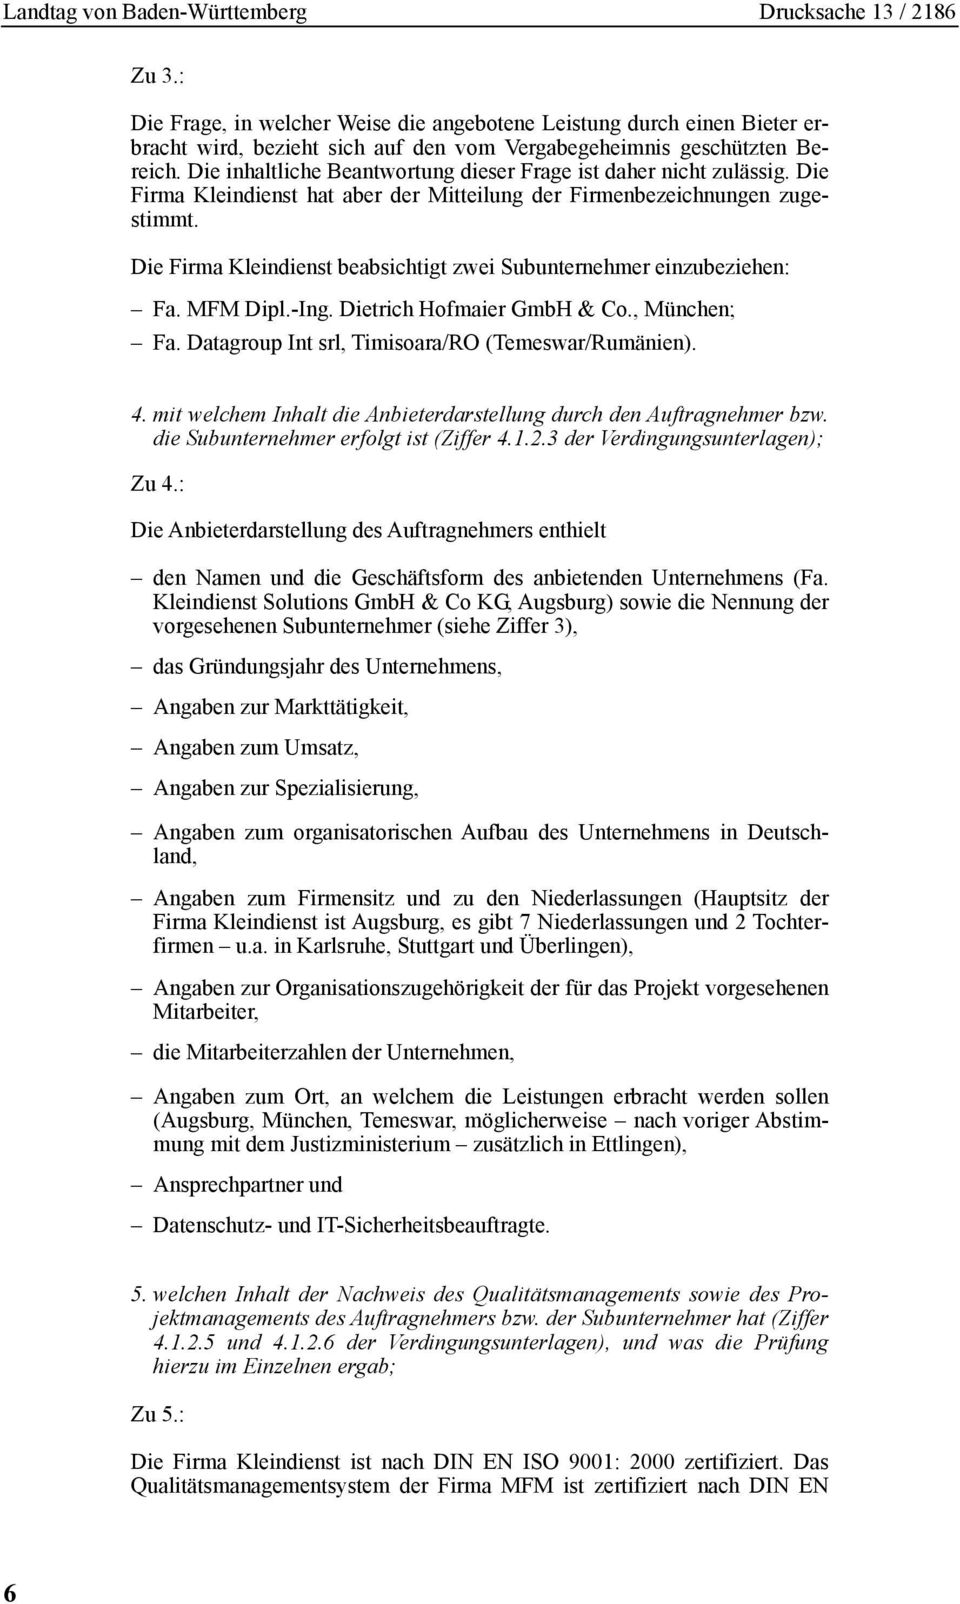 Die Firma Kleindienst beabsichtigt zwei Subunternehmer einzubeziehen: Fa. MFM Dipl.-Ing. Dietrich Hofmaier GmbH & Co., München; Fa. Datagroup Int srl, Timisoara/RO (Temeswar/Rumänien). 4.